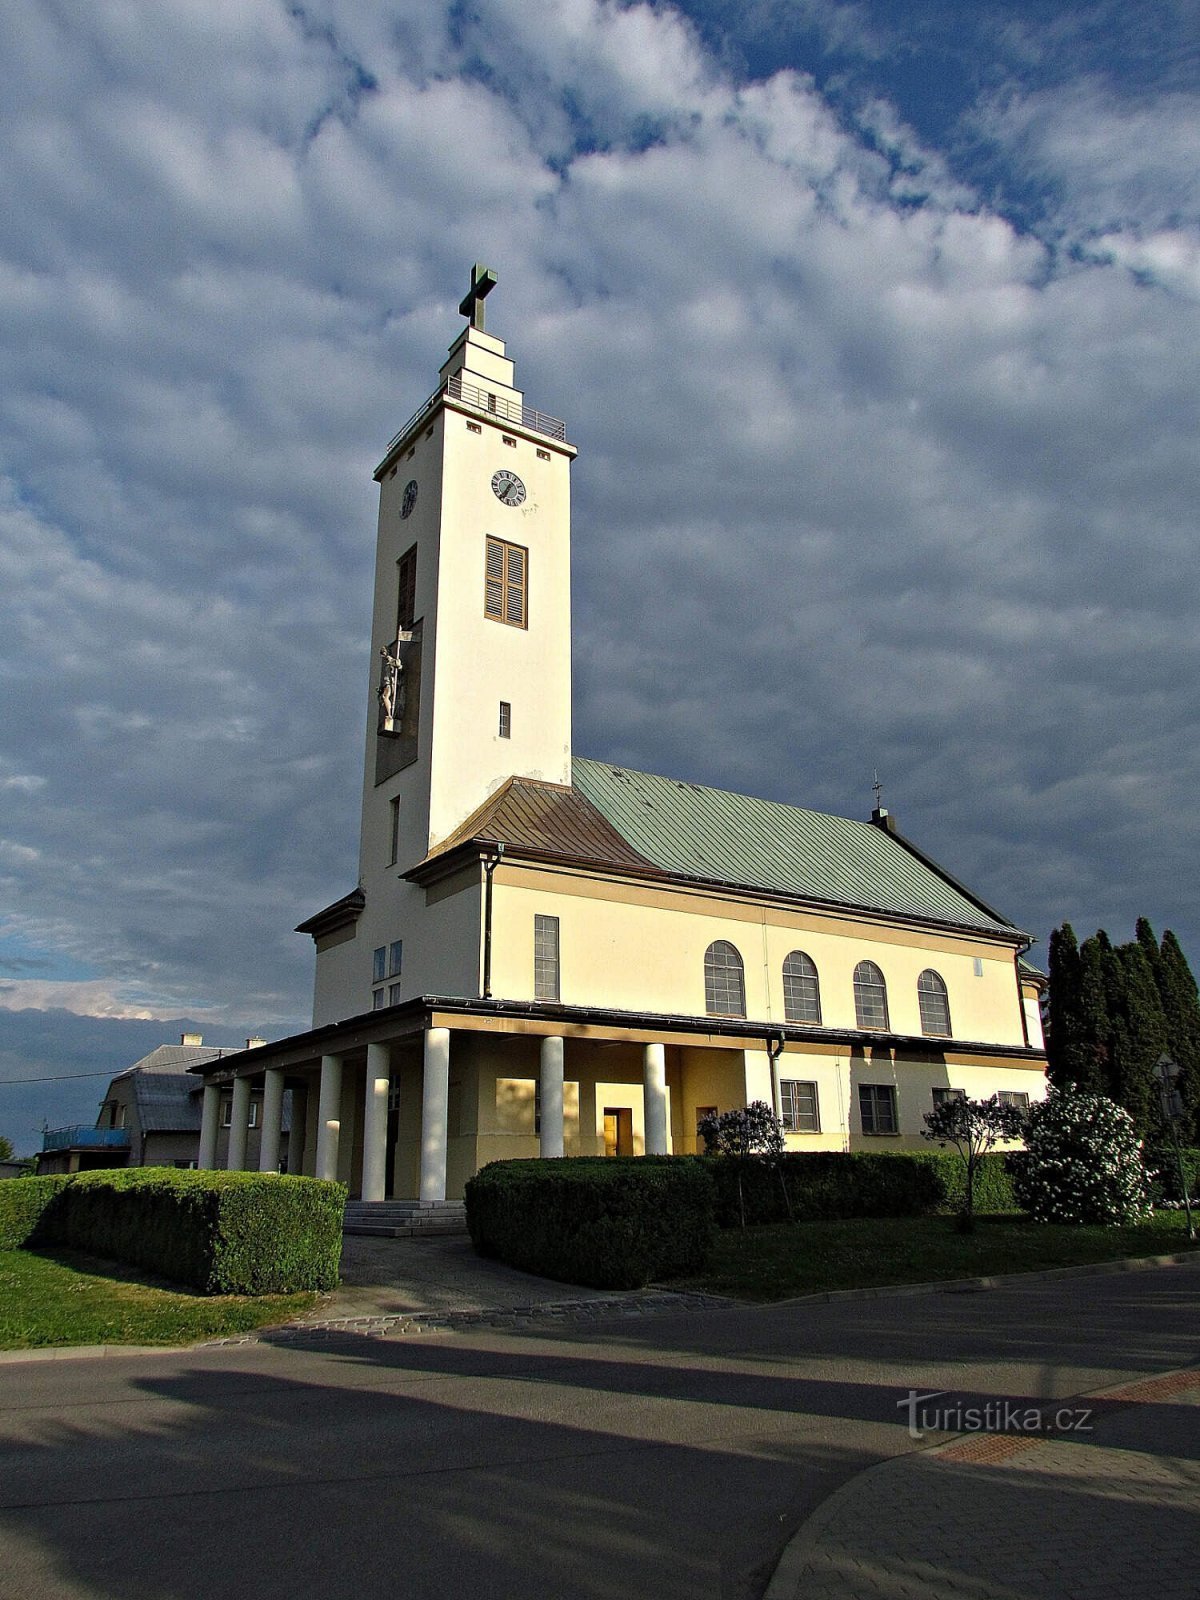 Rostění - igreja de St. Florián